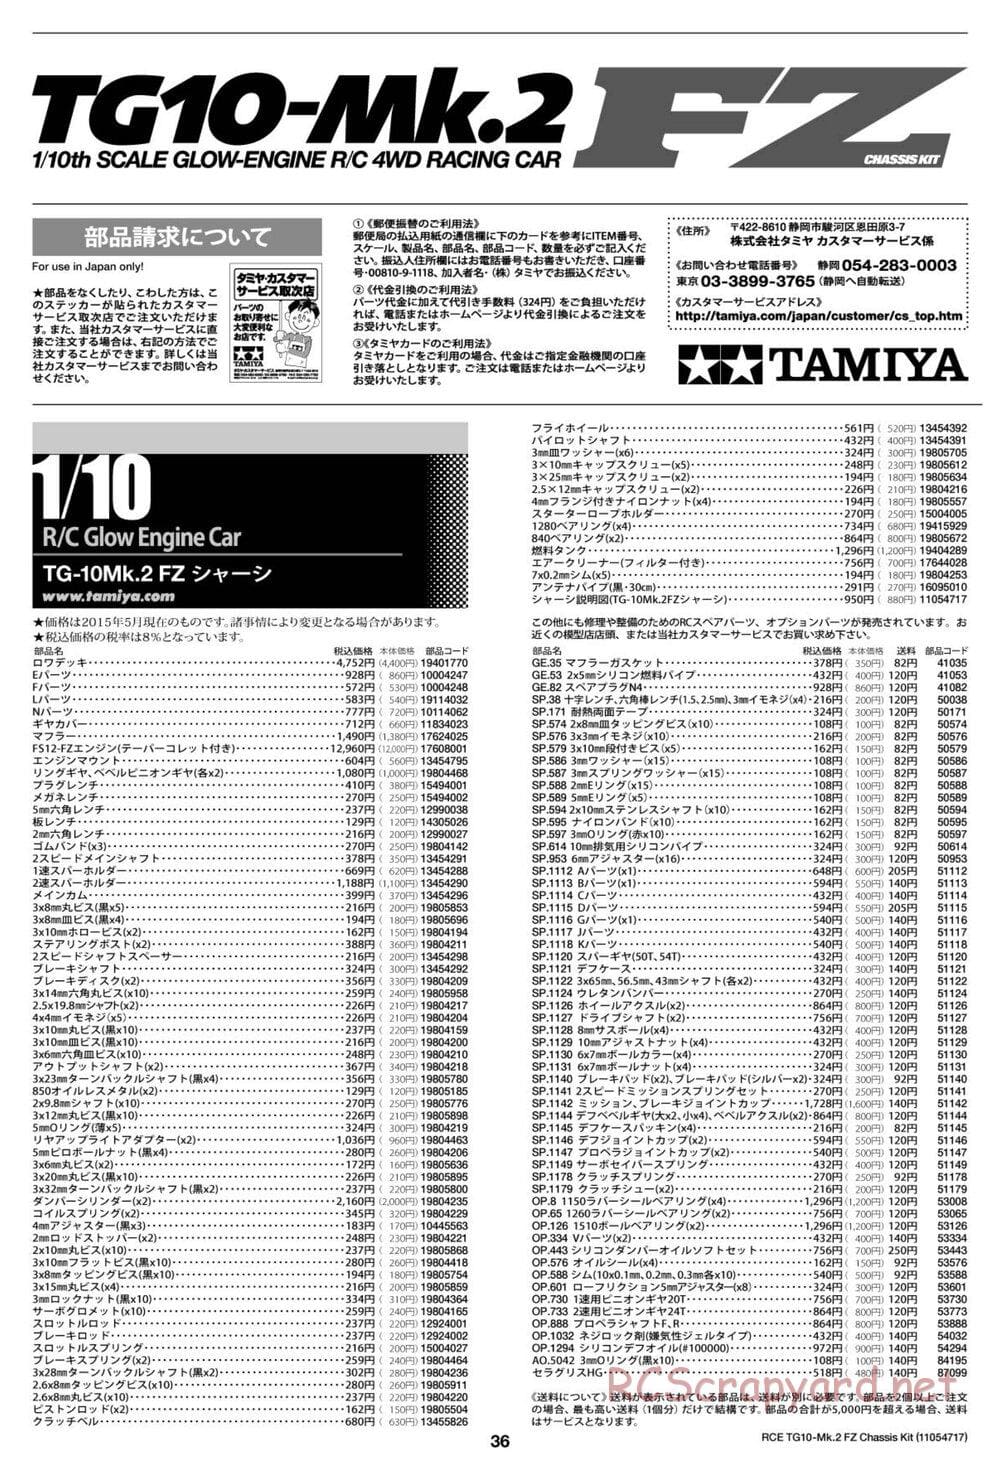 Tamiya - TG10 Mk.2 FZ Chassis - Manual - Page 36